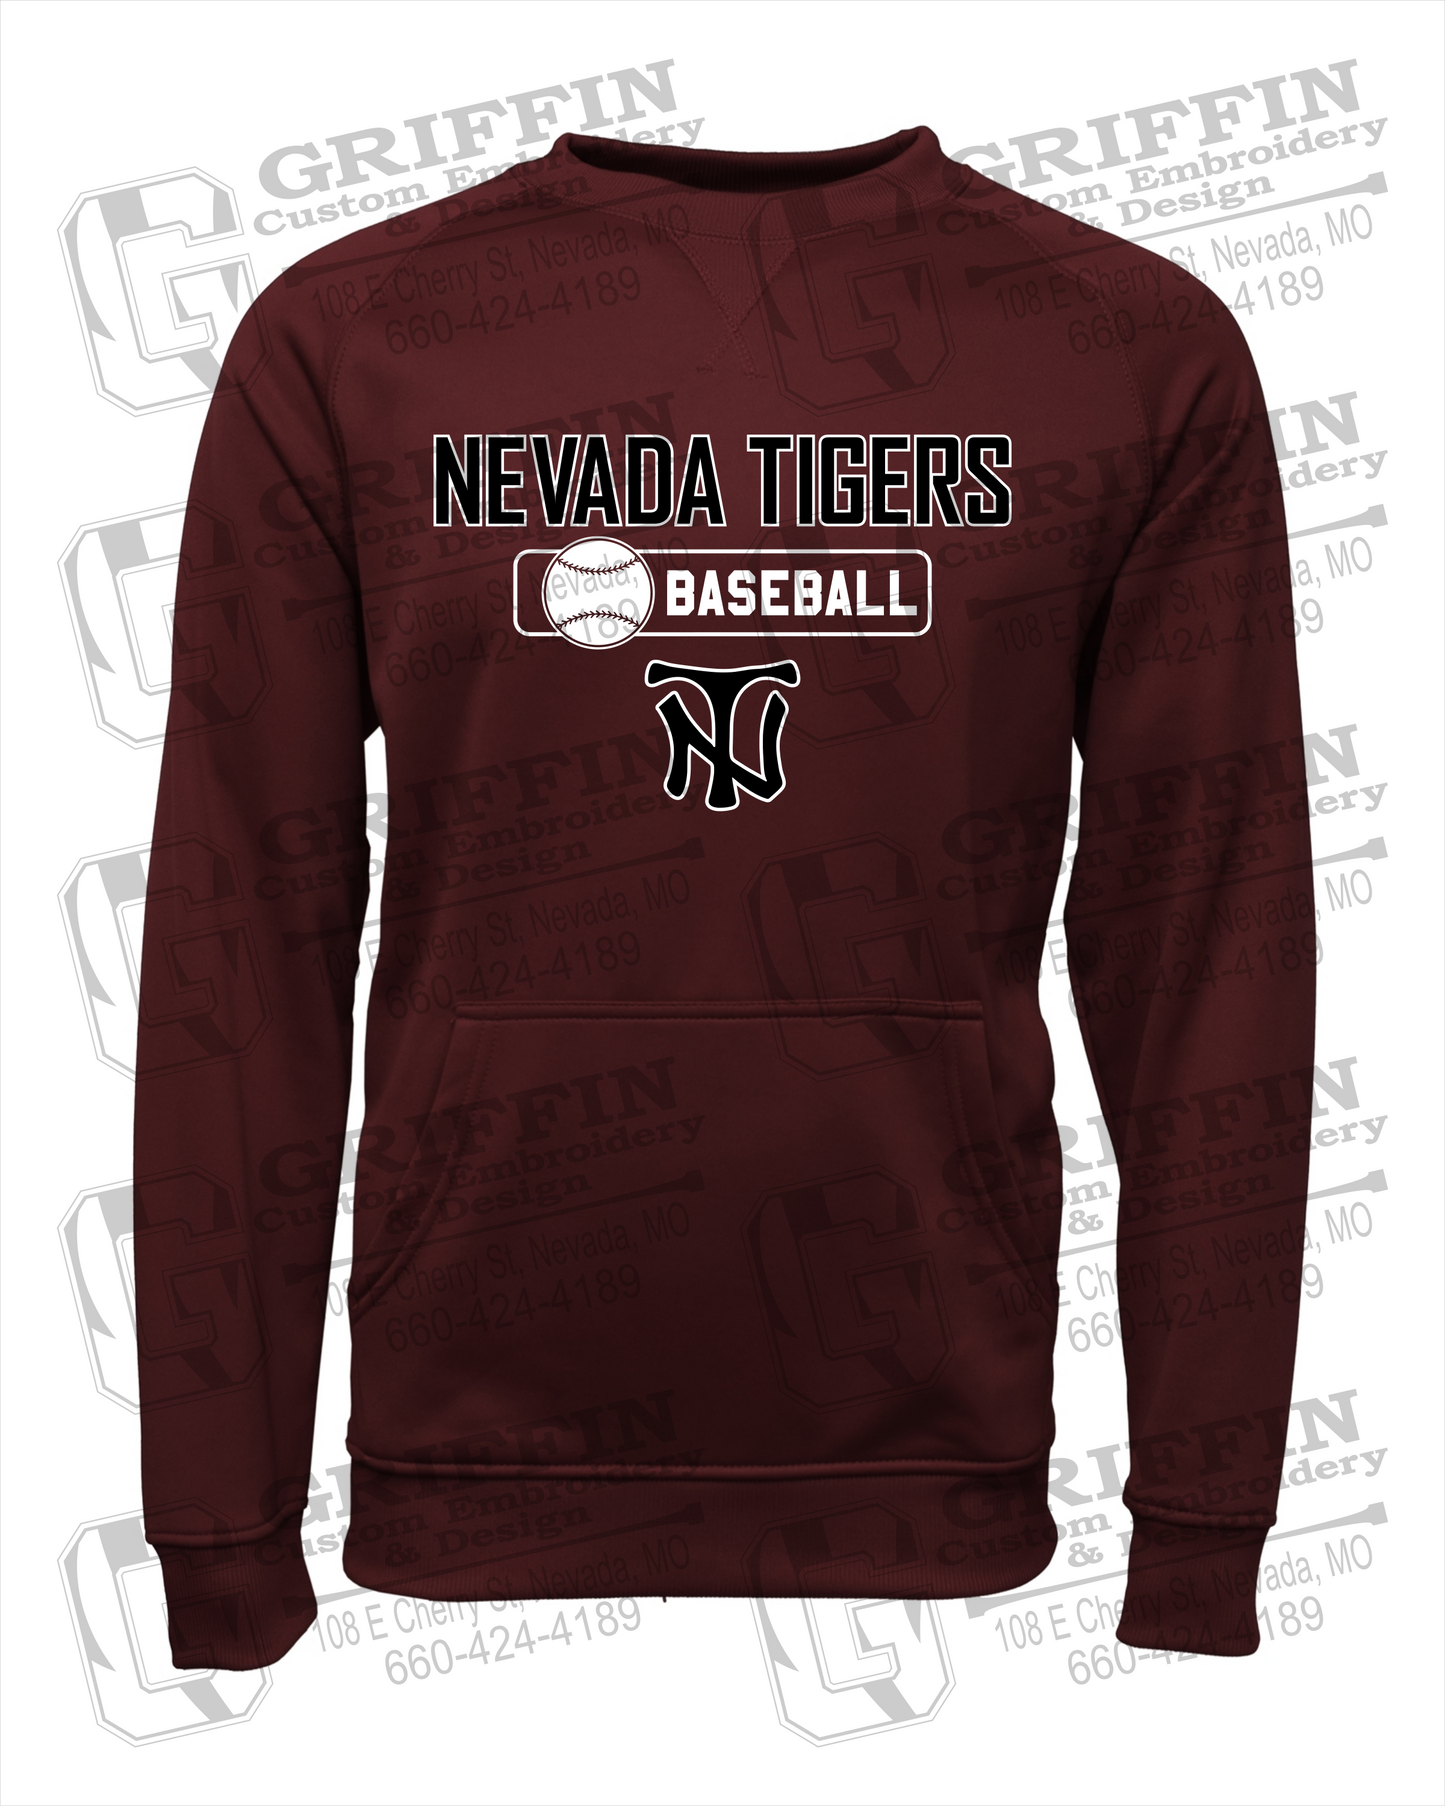 Nevada Tigers 24-S Sweatshirt - Baseball